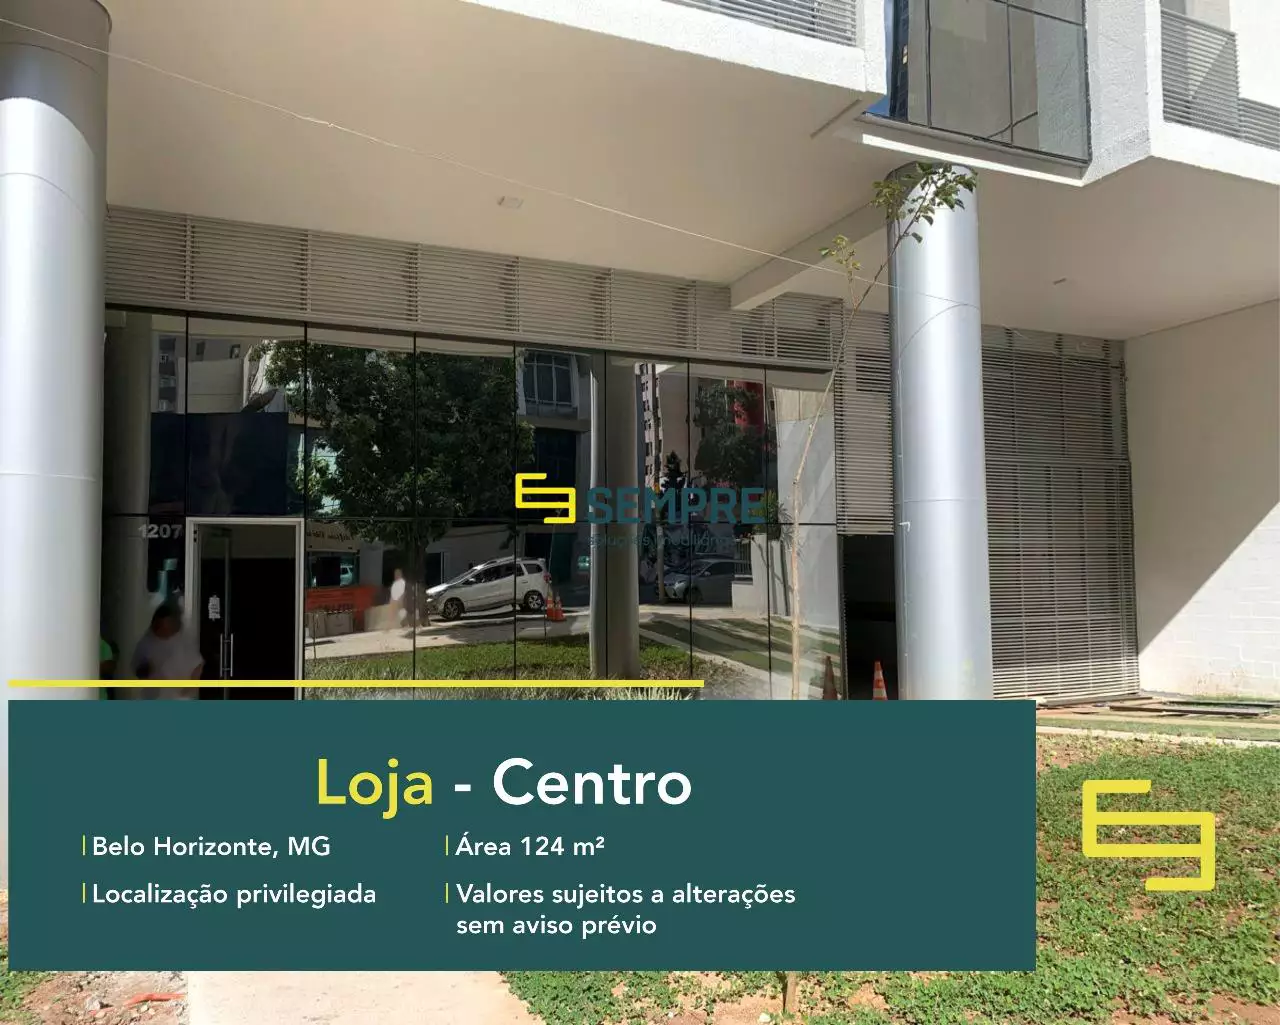 Loja para locação em Belo Horizonte - Centro, em excelente localização. O ponto comercial conta com área de 124,33 m².